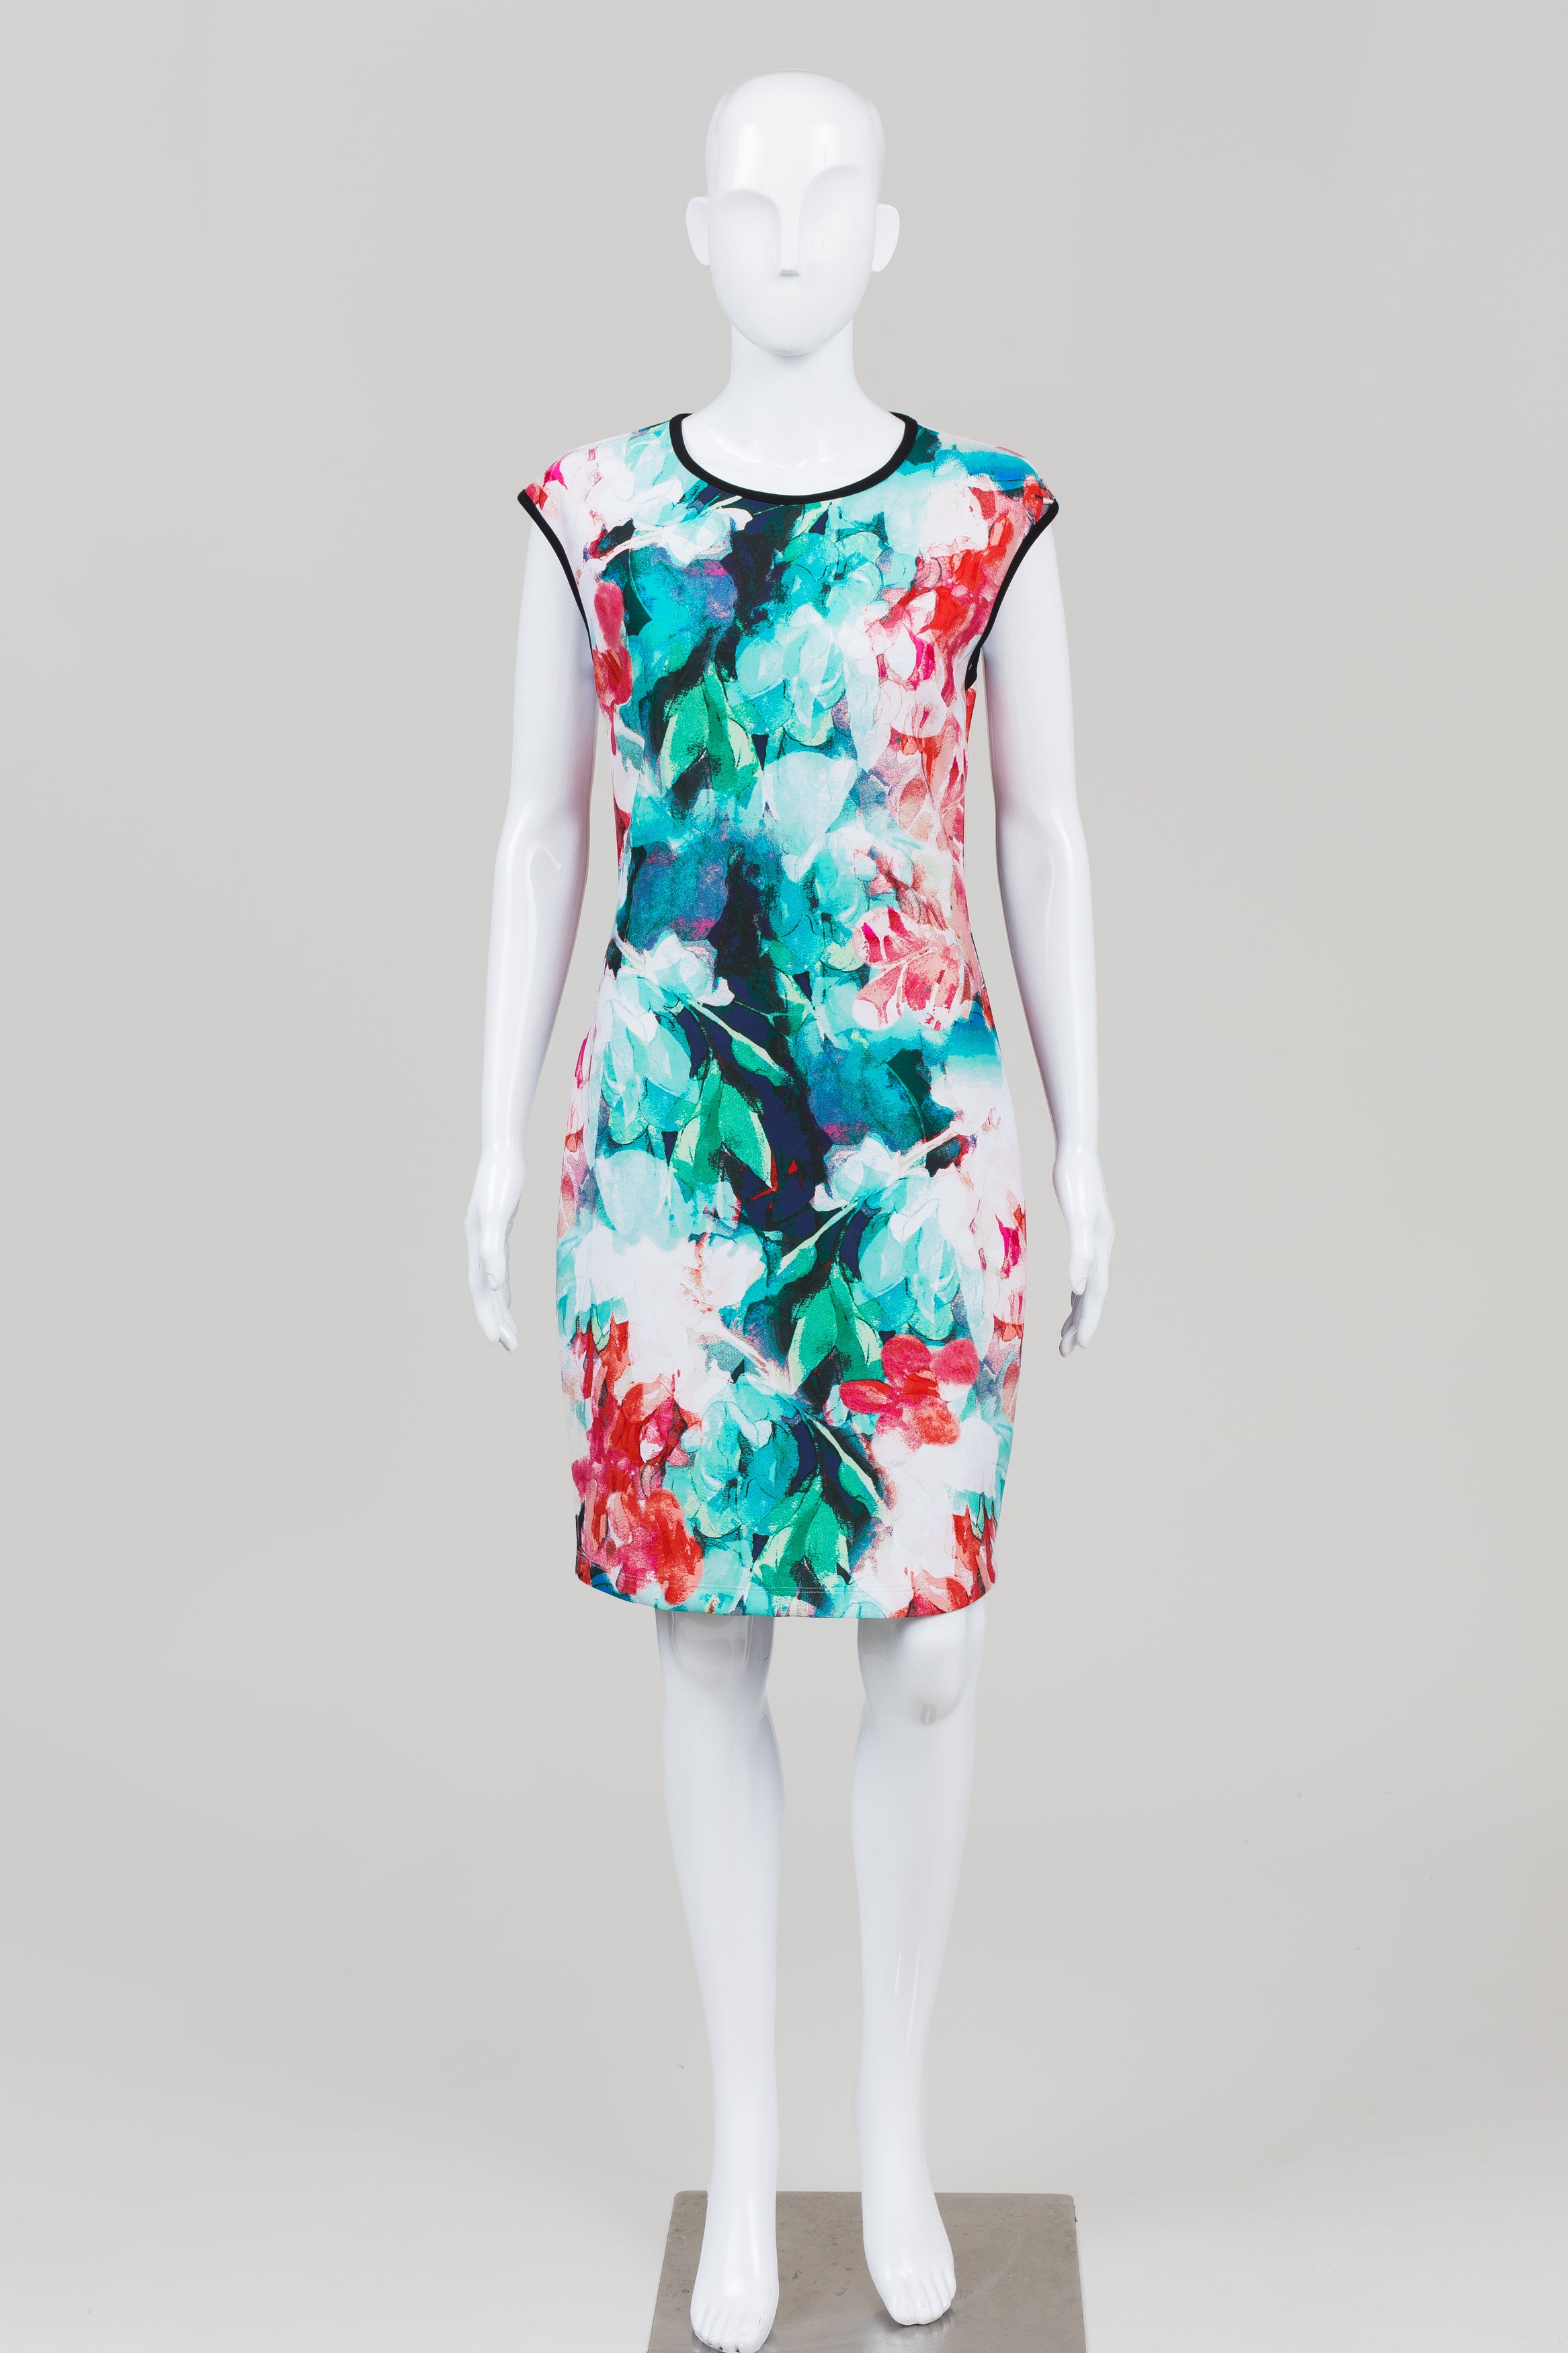 Bisou Bisou Teal/Navy/Coral Floral Print Sheath Dress (10)